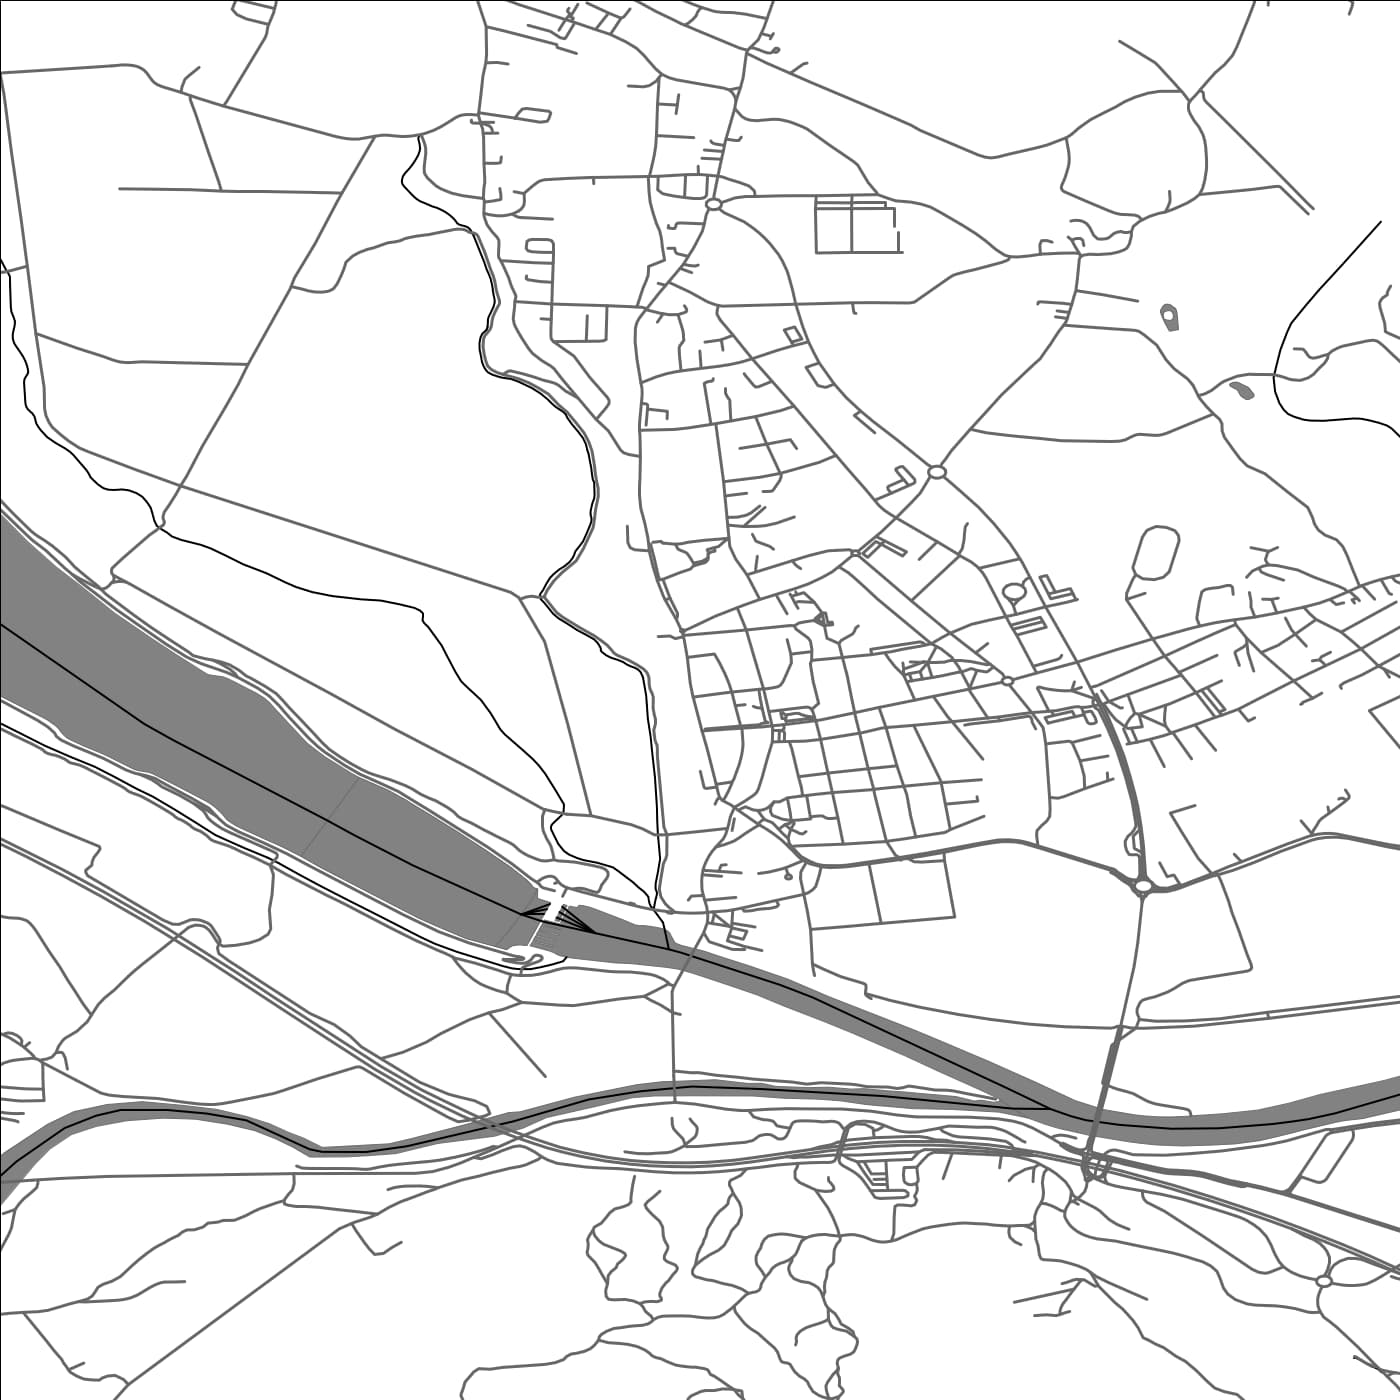 ROAD MAP OF BREŽICE, SLOVENIA BY MAPBAKES